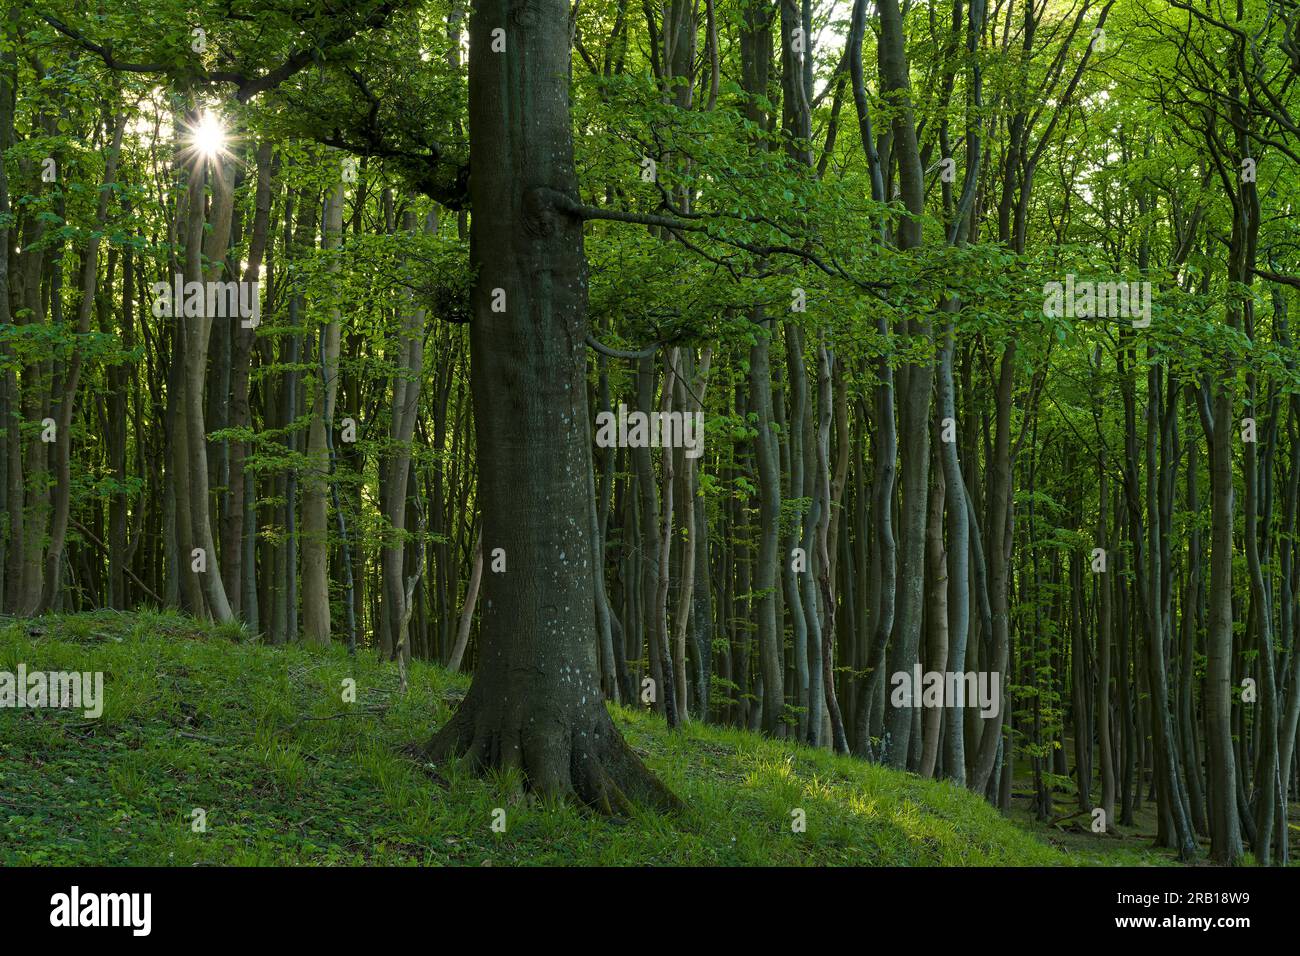 Foresta di faggi nel Parco Nazionale di Jasmund, sito patrimonio naturale dell'UNESCO, antiche foreste di faggi, isola di Rügen, Germania, Meclemburgo-Pomerania occidentale Foto Stock